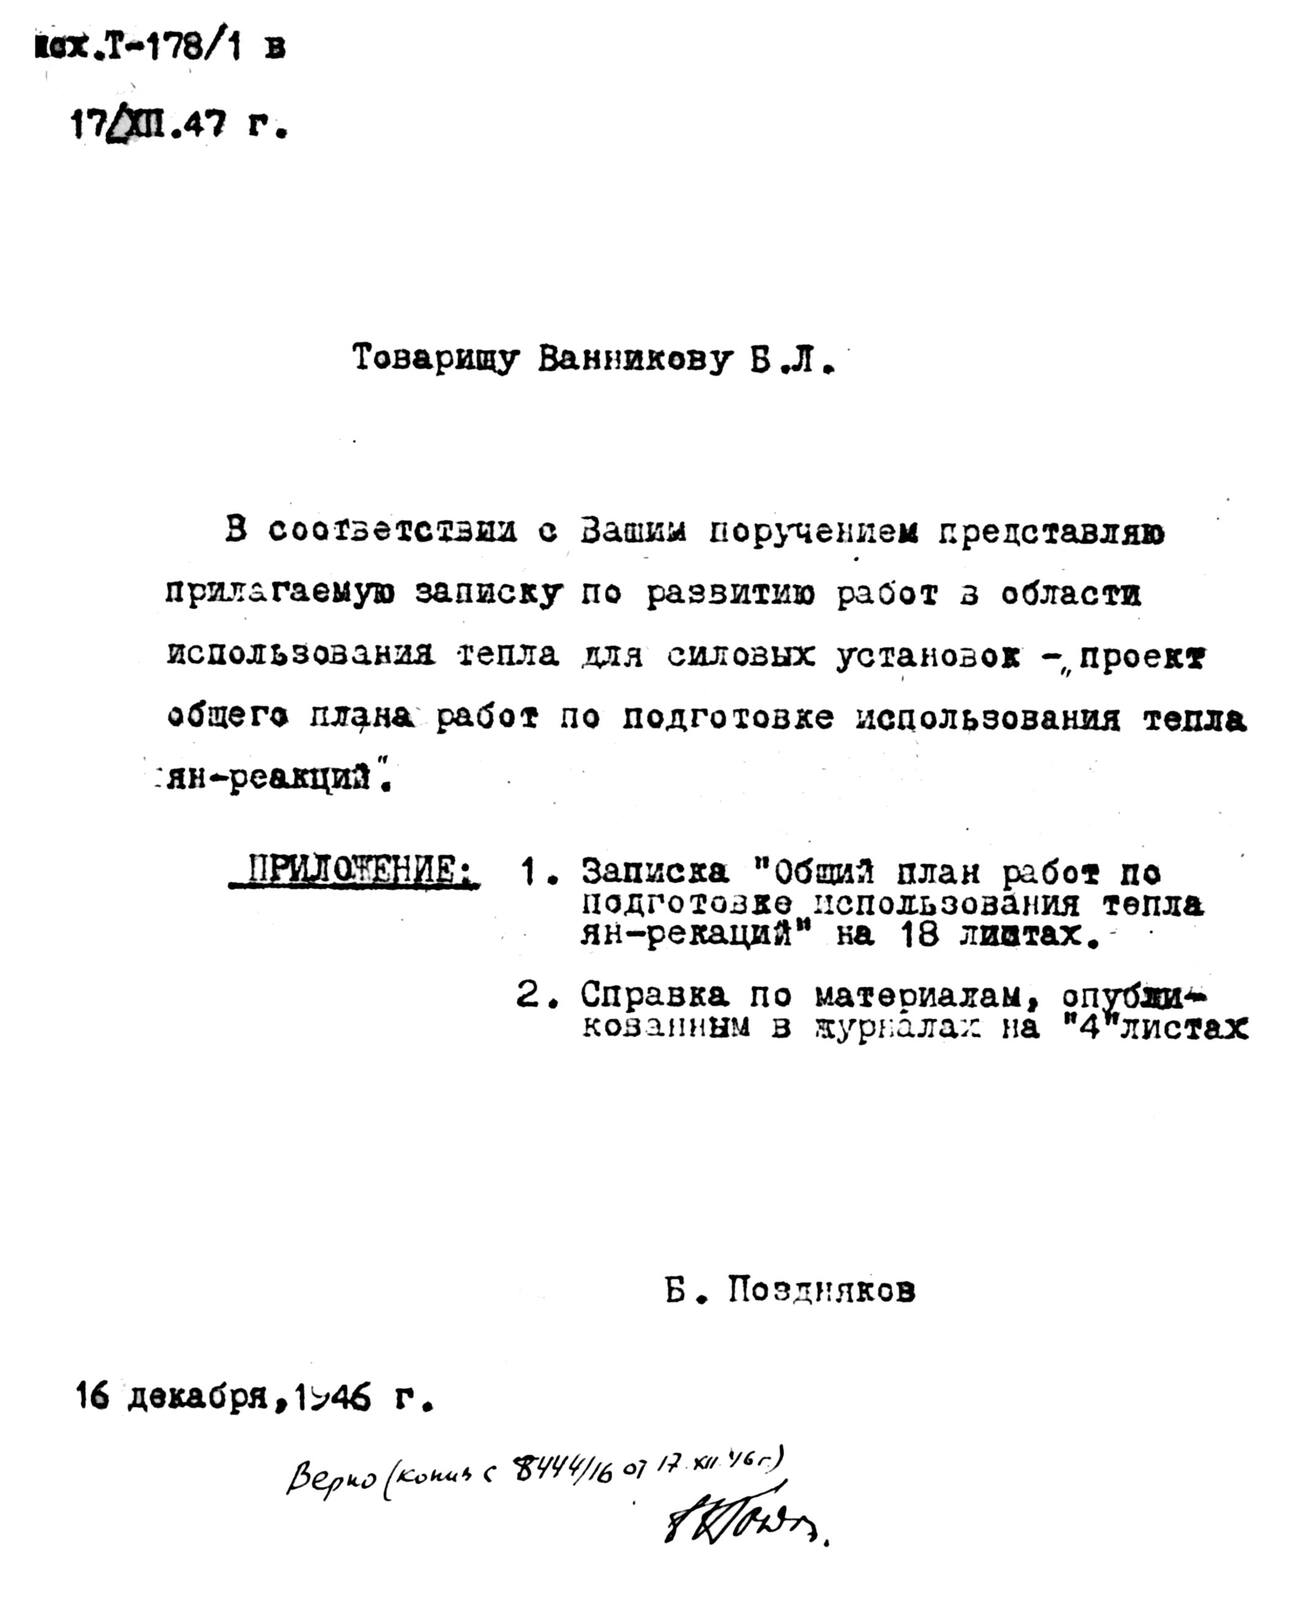 В 1946 году Б.С. Поздняков подготовил записку «Энергосиловые установки на ядерных реакциях»